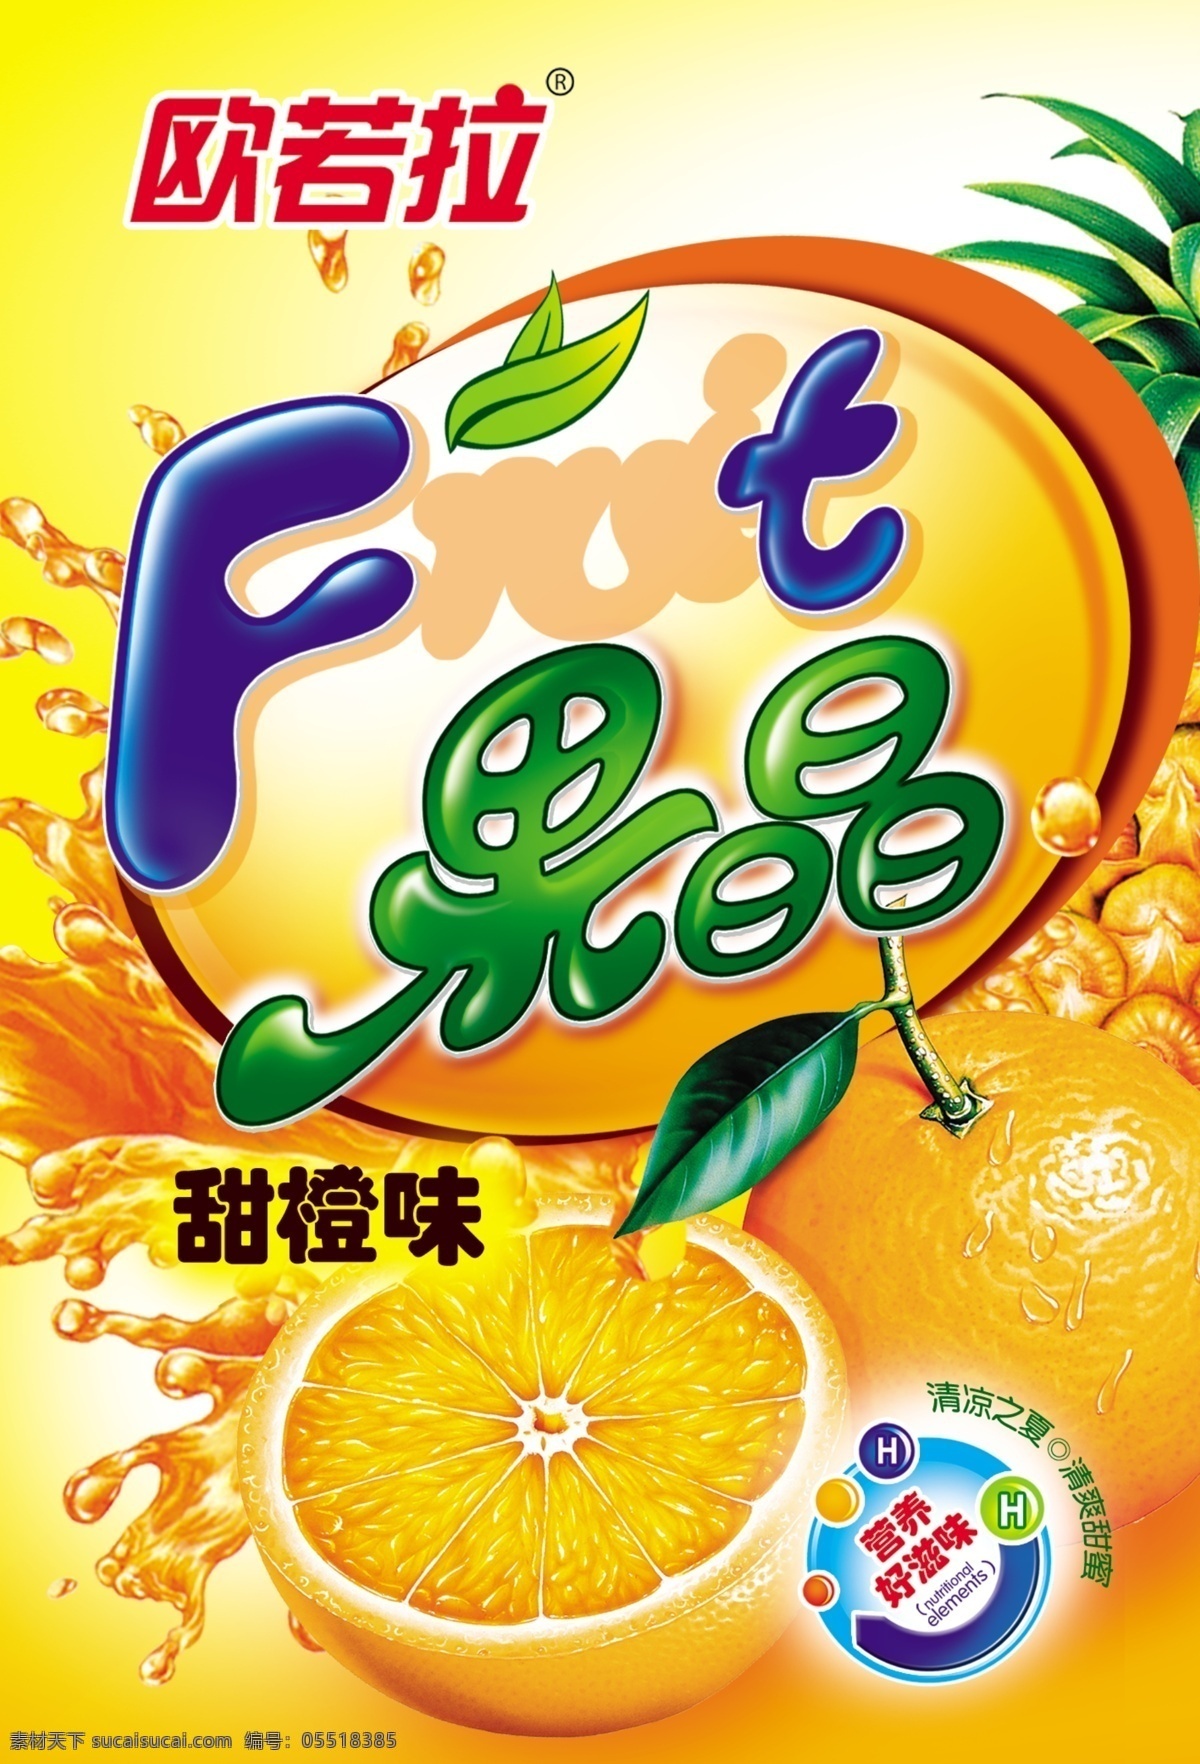 水果 果子 foot 橘子 橙子 果晶 广告设计模板 源文件